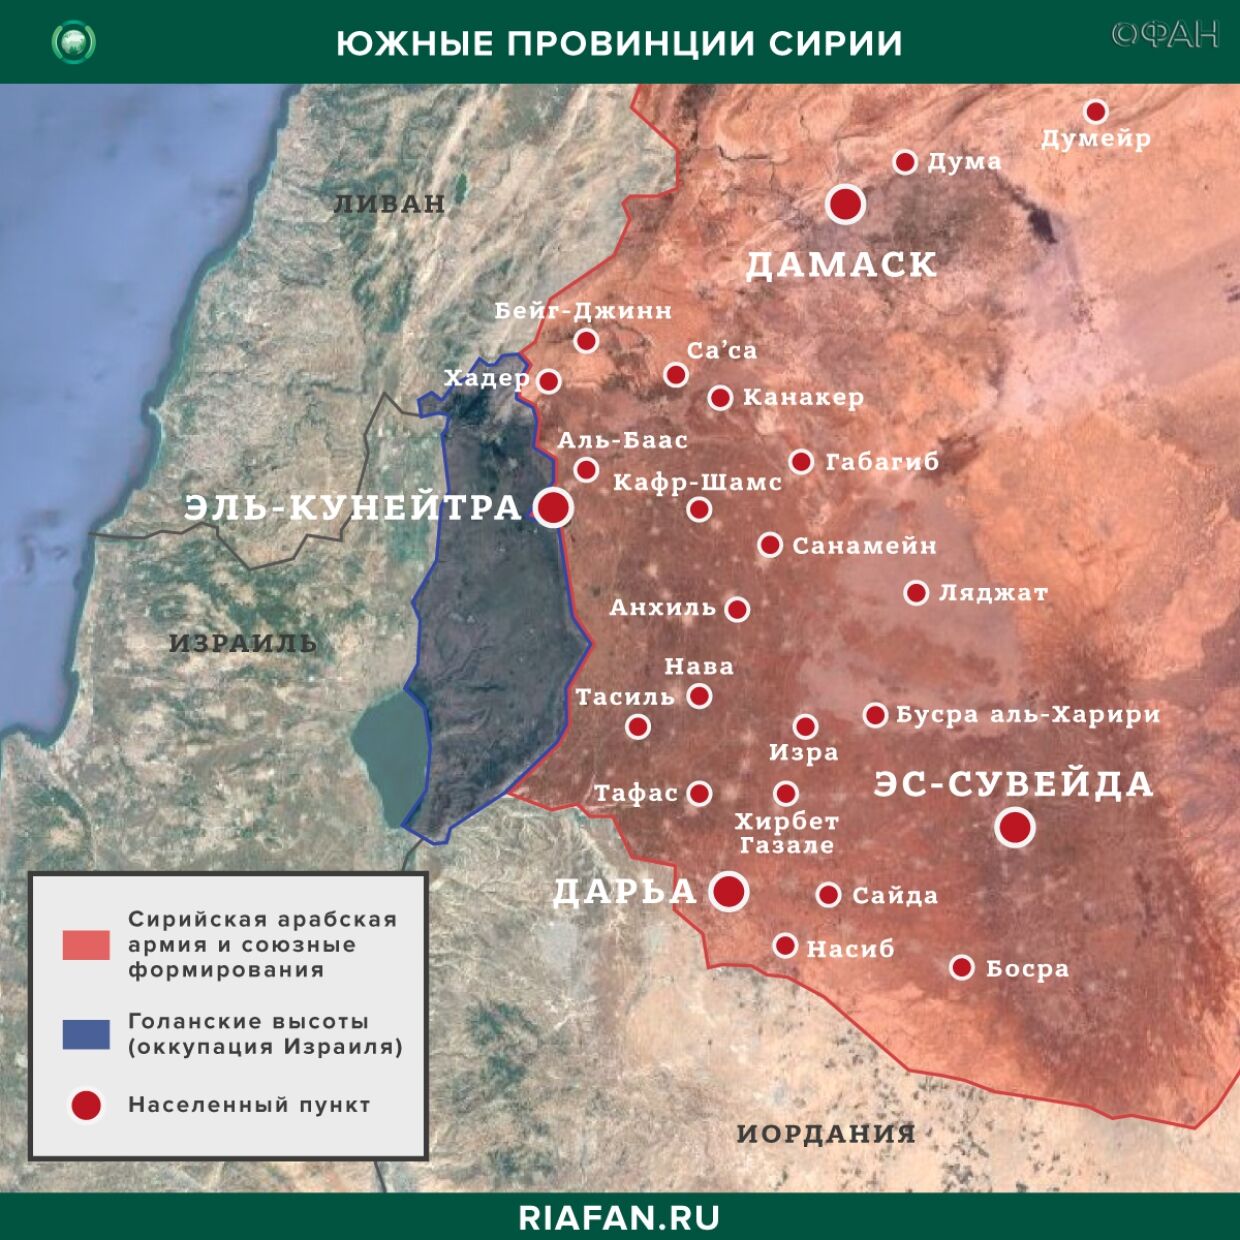 Nouvelles de Syrie 10 Avril 12.30: предотвращен взрыв в городе Азаз, МИД РФ сообщил о попытках сорвать перемирие в Идлибе